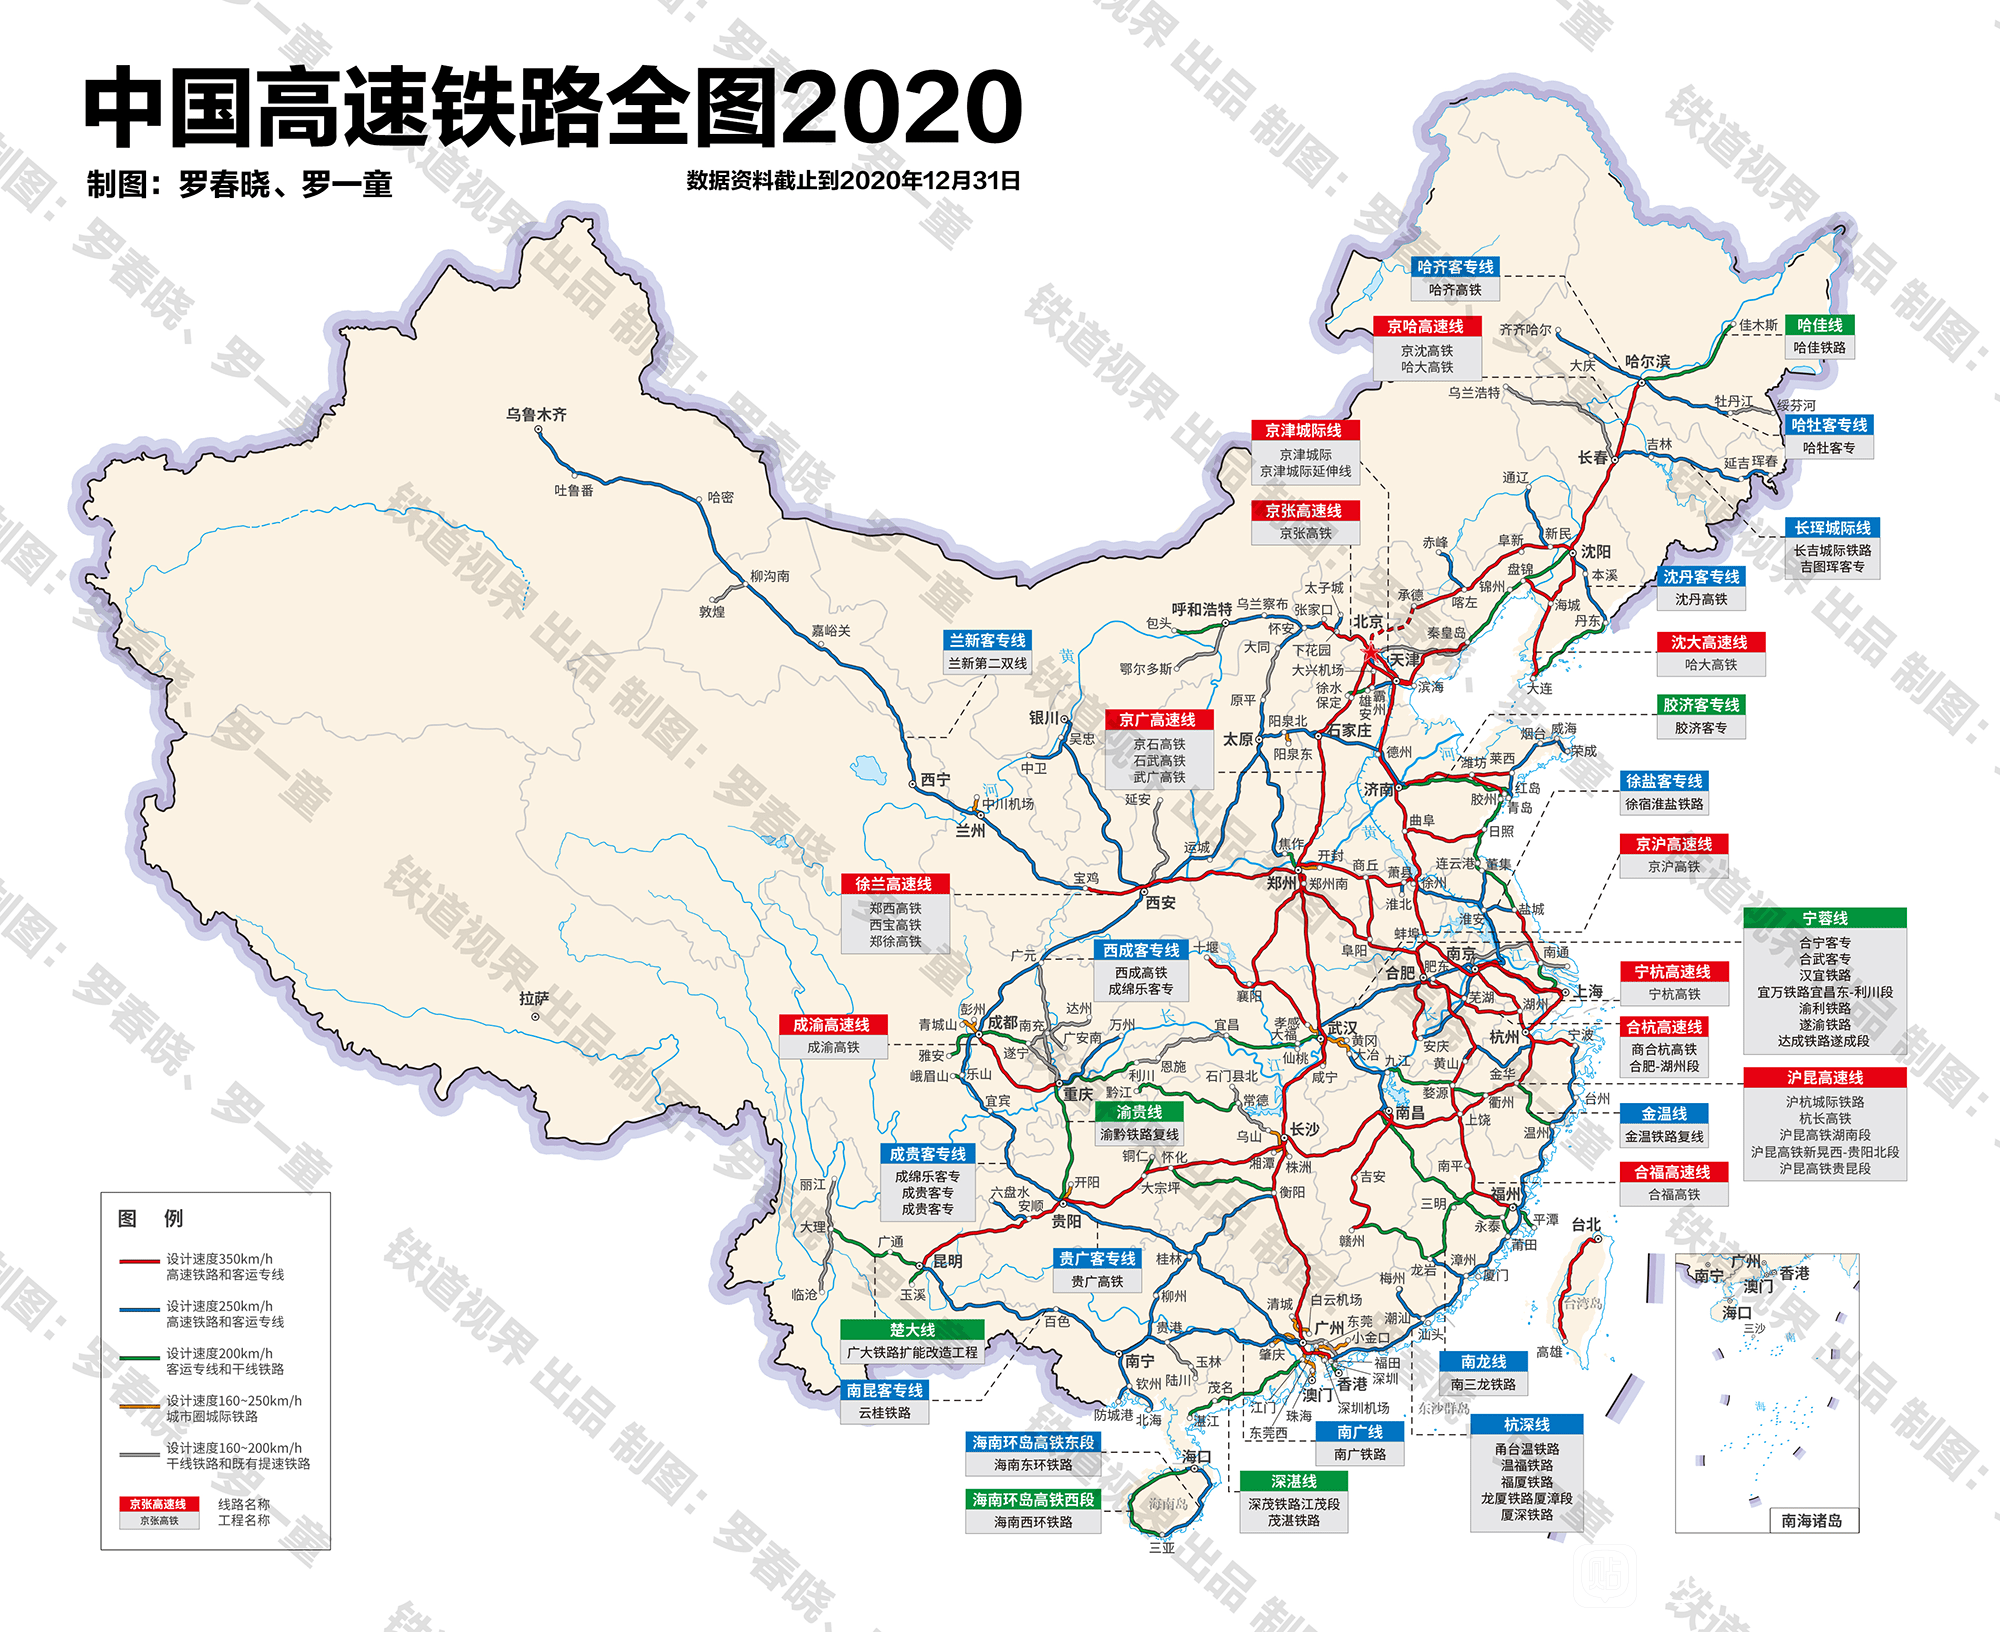 原创2020中国高铁网:多个城市铁路地位改变,部分相邻省会互通性差